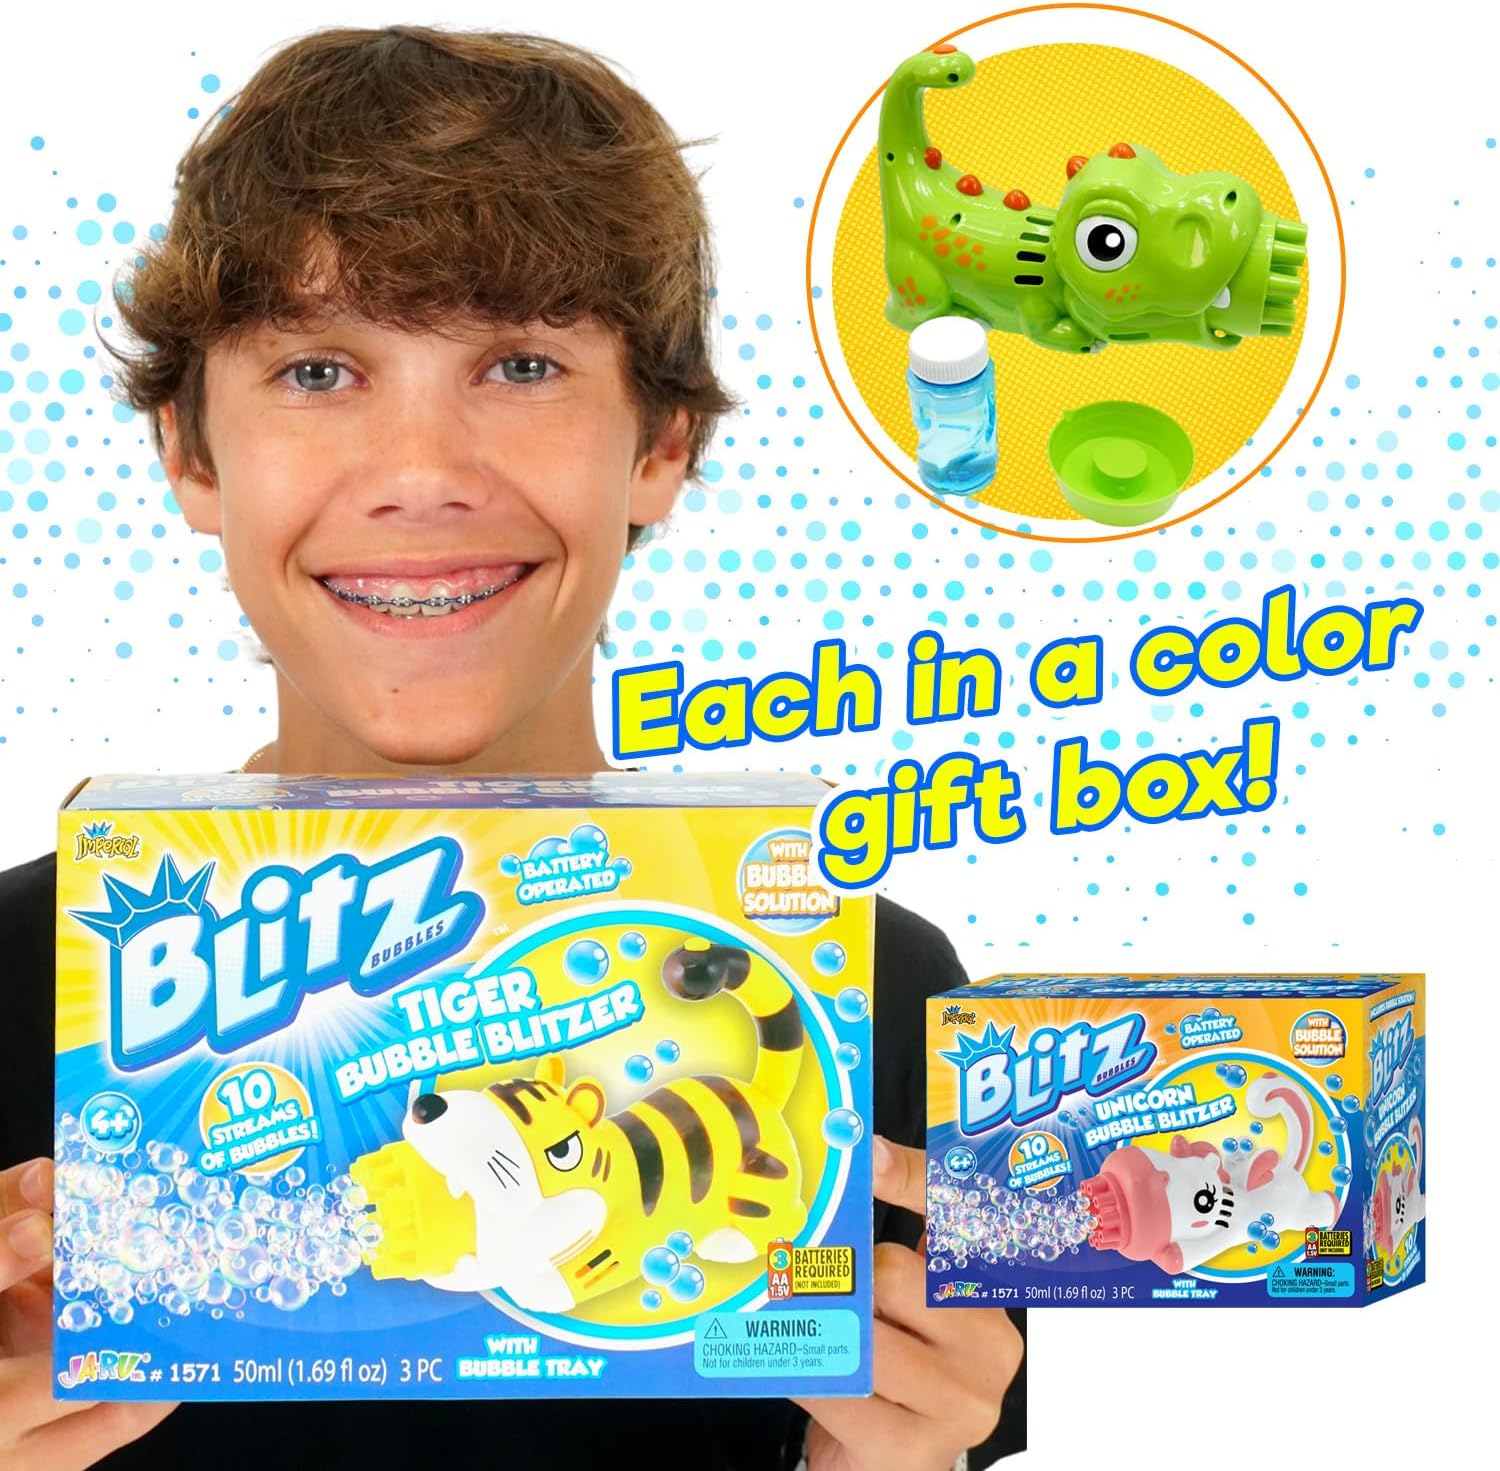 JA-RU-Blitz Bubble Blitzer Animal Assorted Styles-1571-Legacy Toys